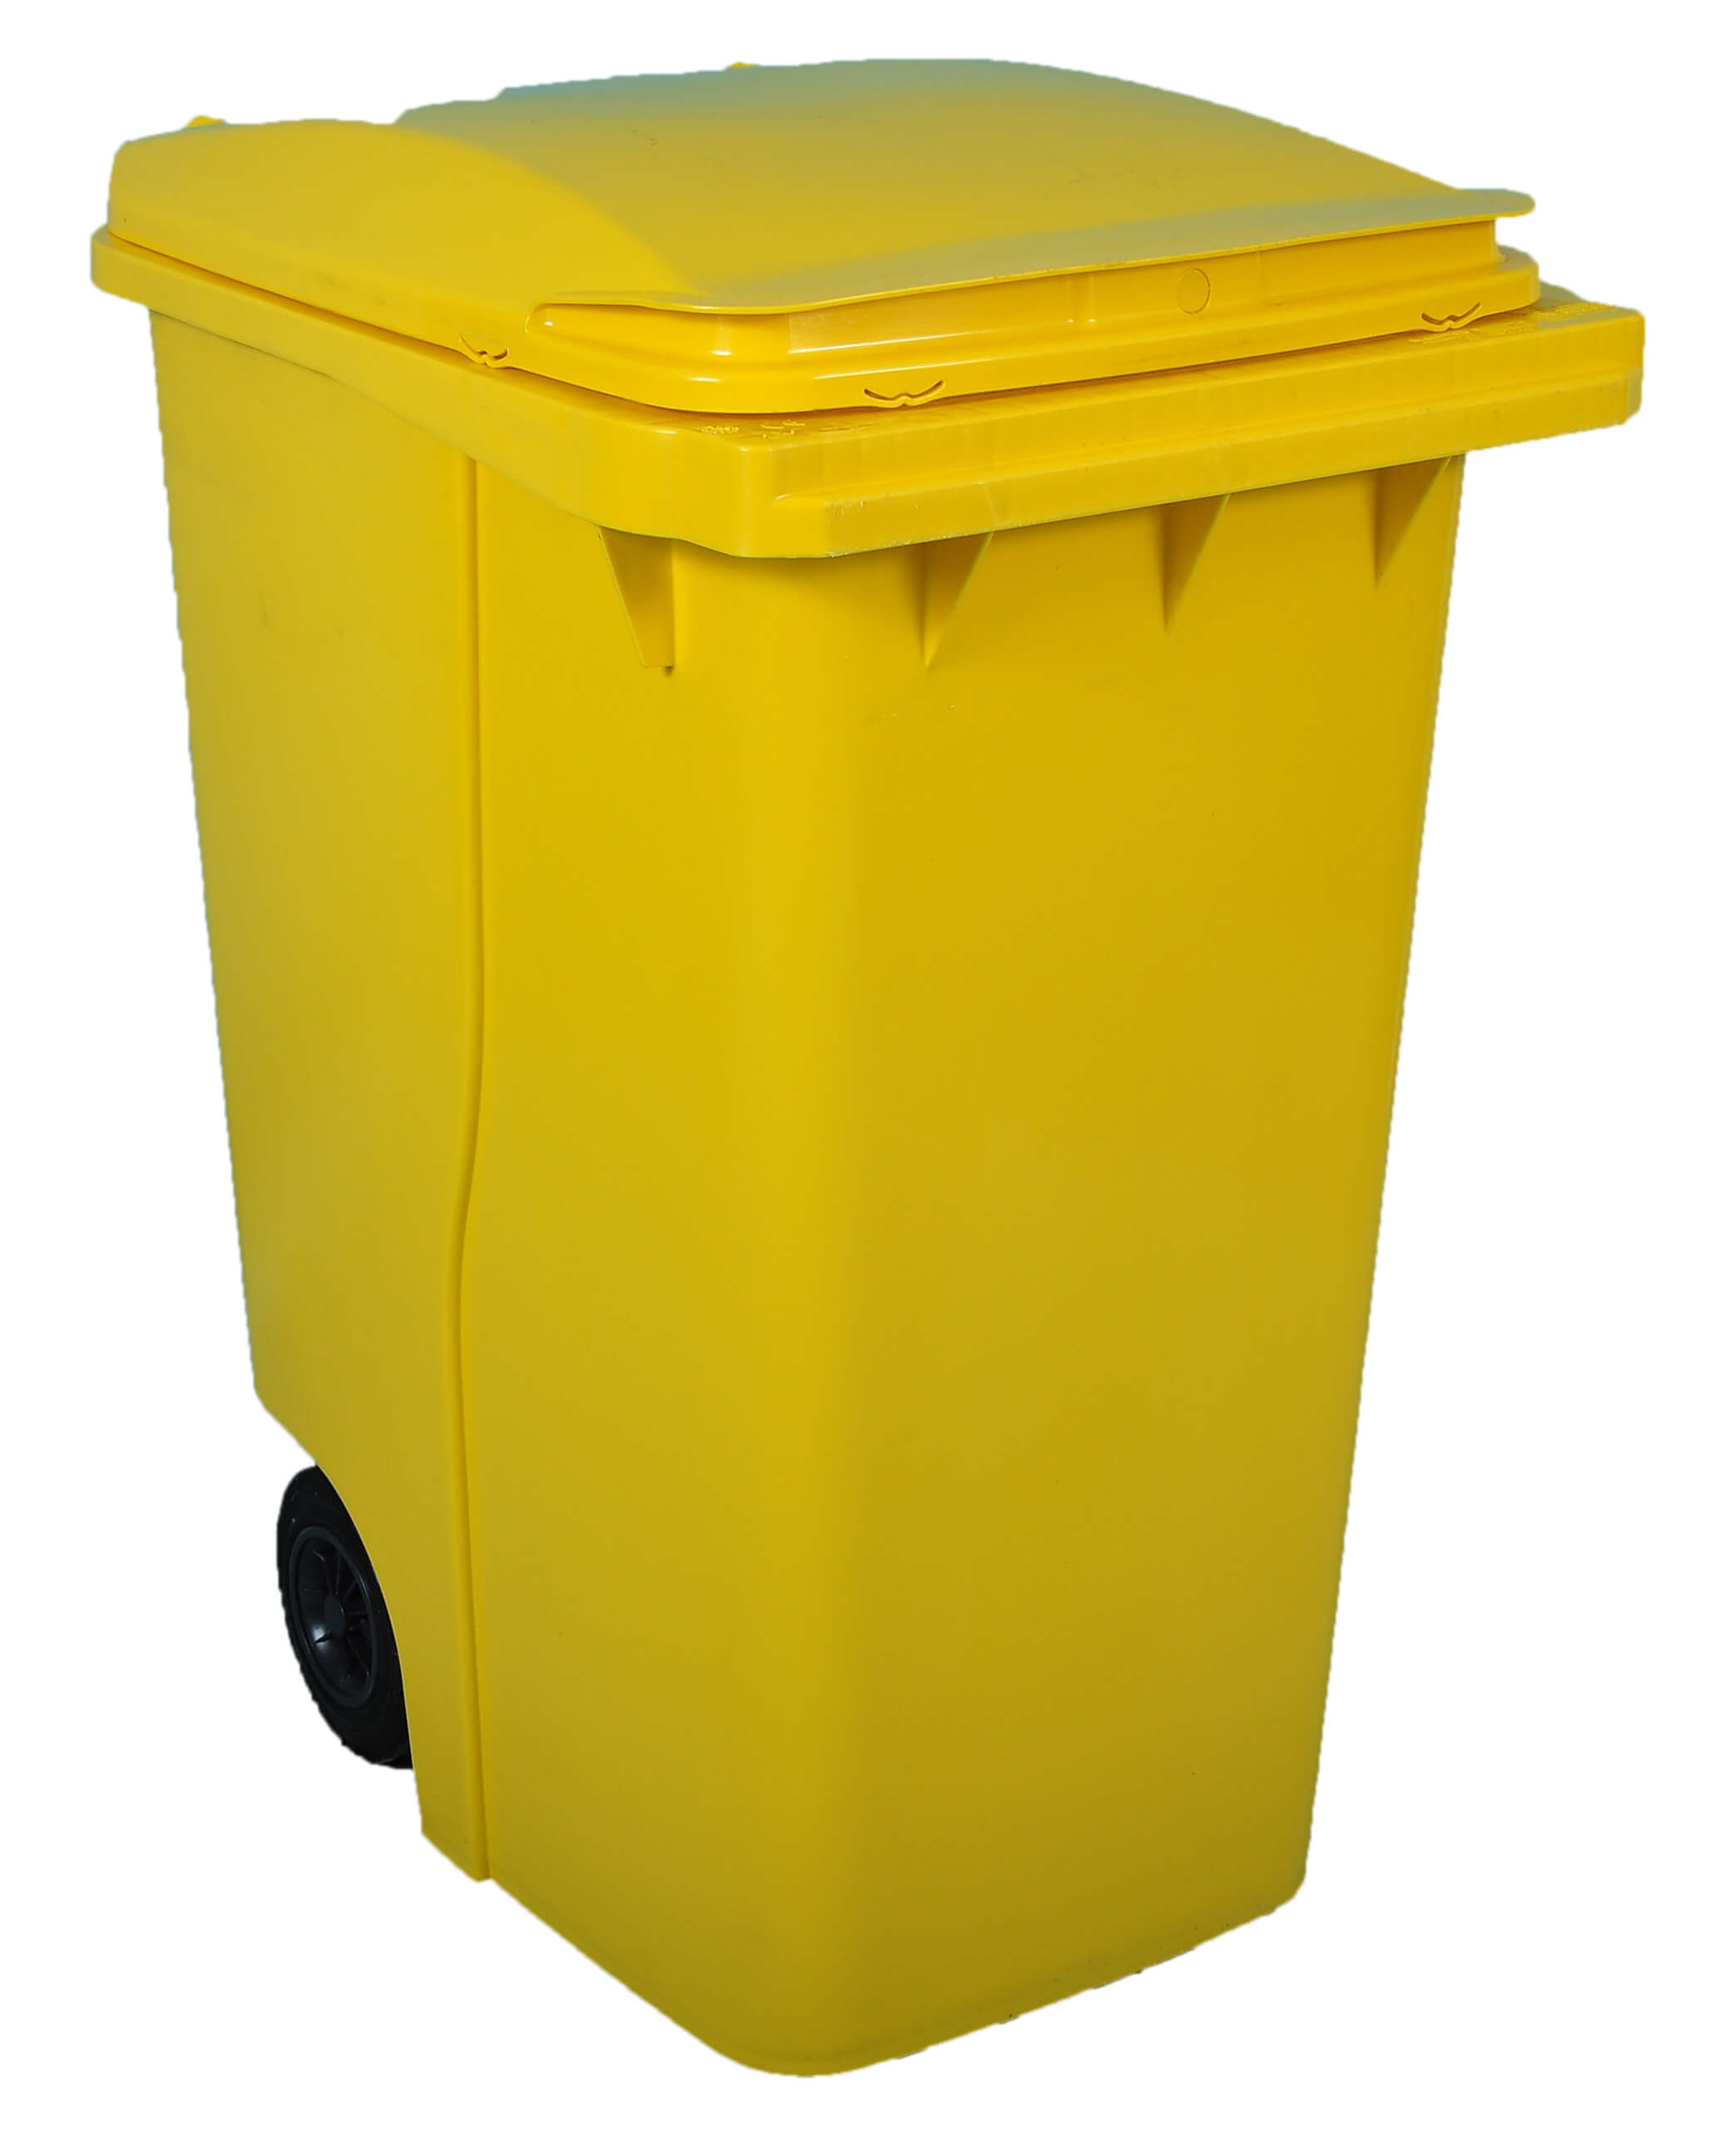 Empty 360 litre Wheelie Bin: Yellow